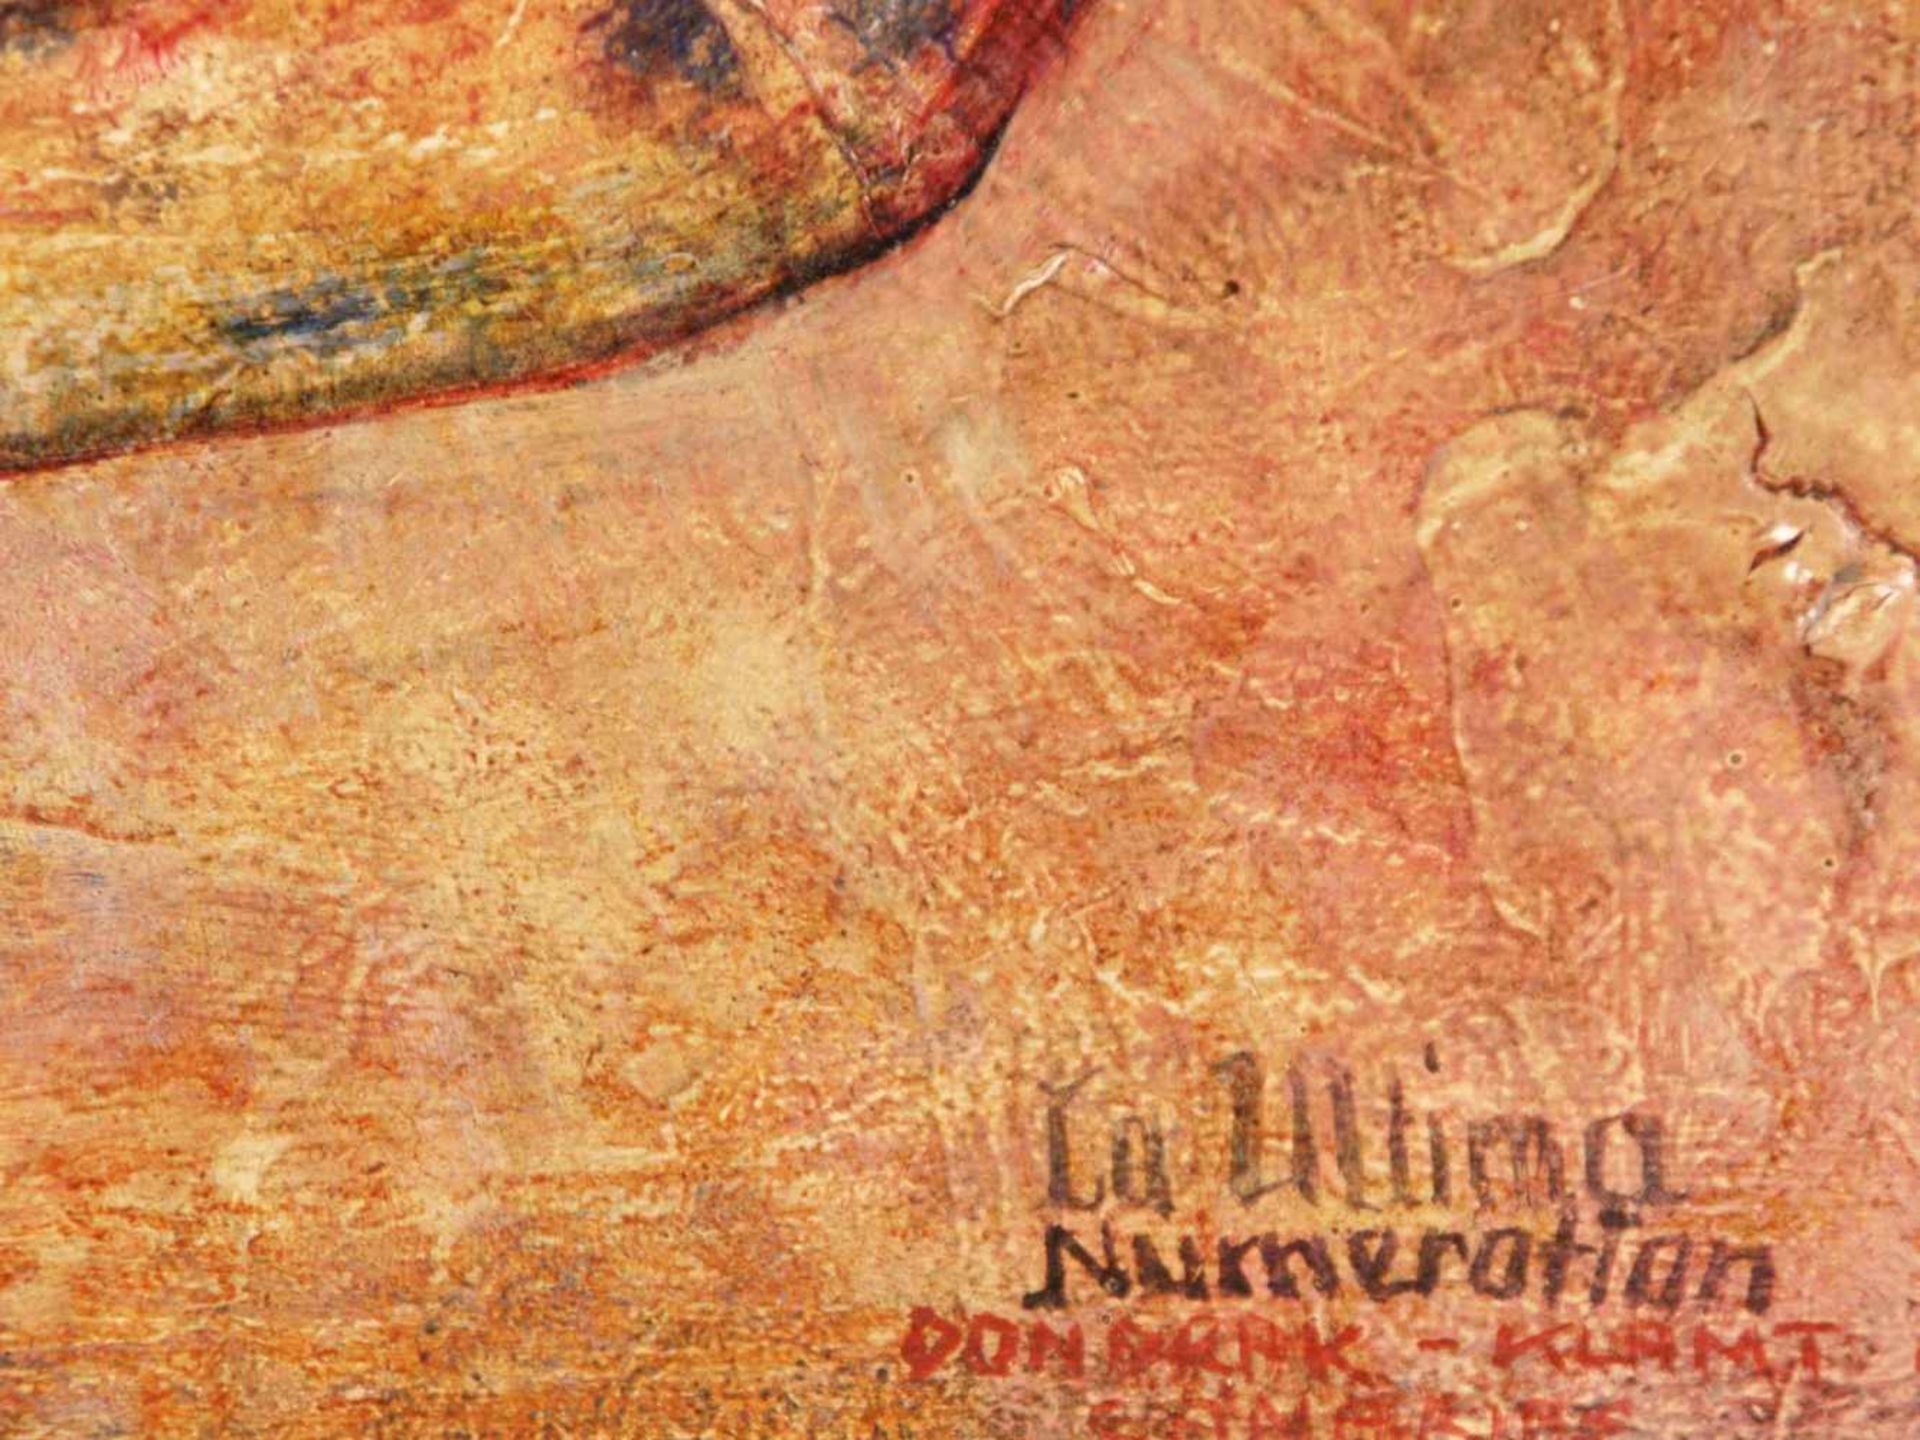 Italienischer Künstler 20.Jh. - "La ultima numeration", abstrakte Komposition mit Frauenakten, - Bild 4 aus 5